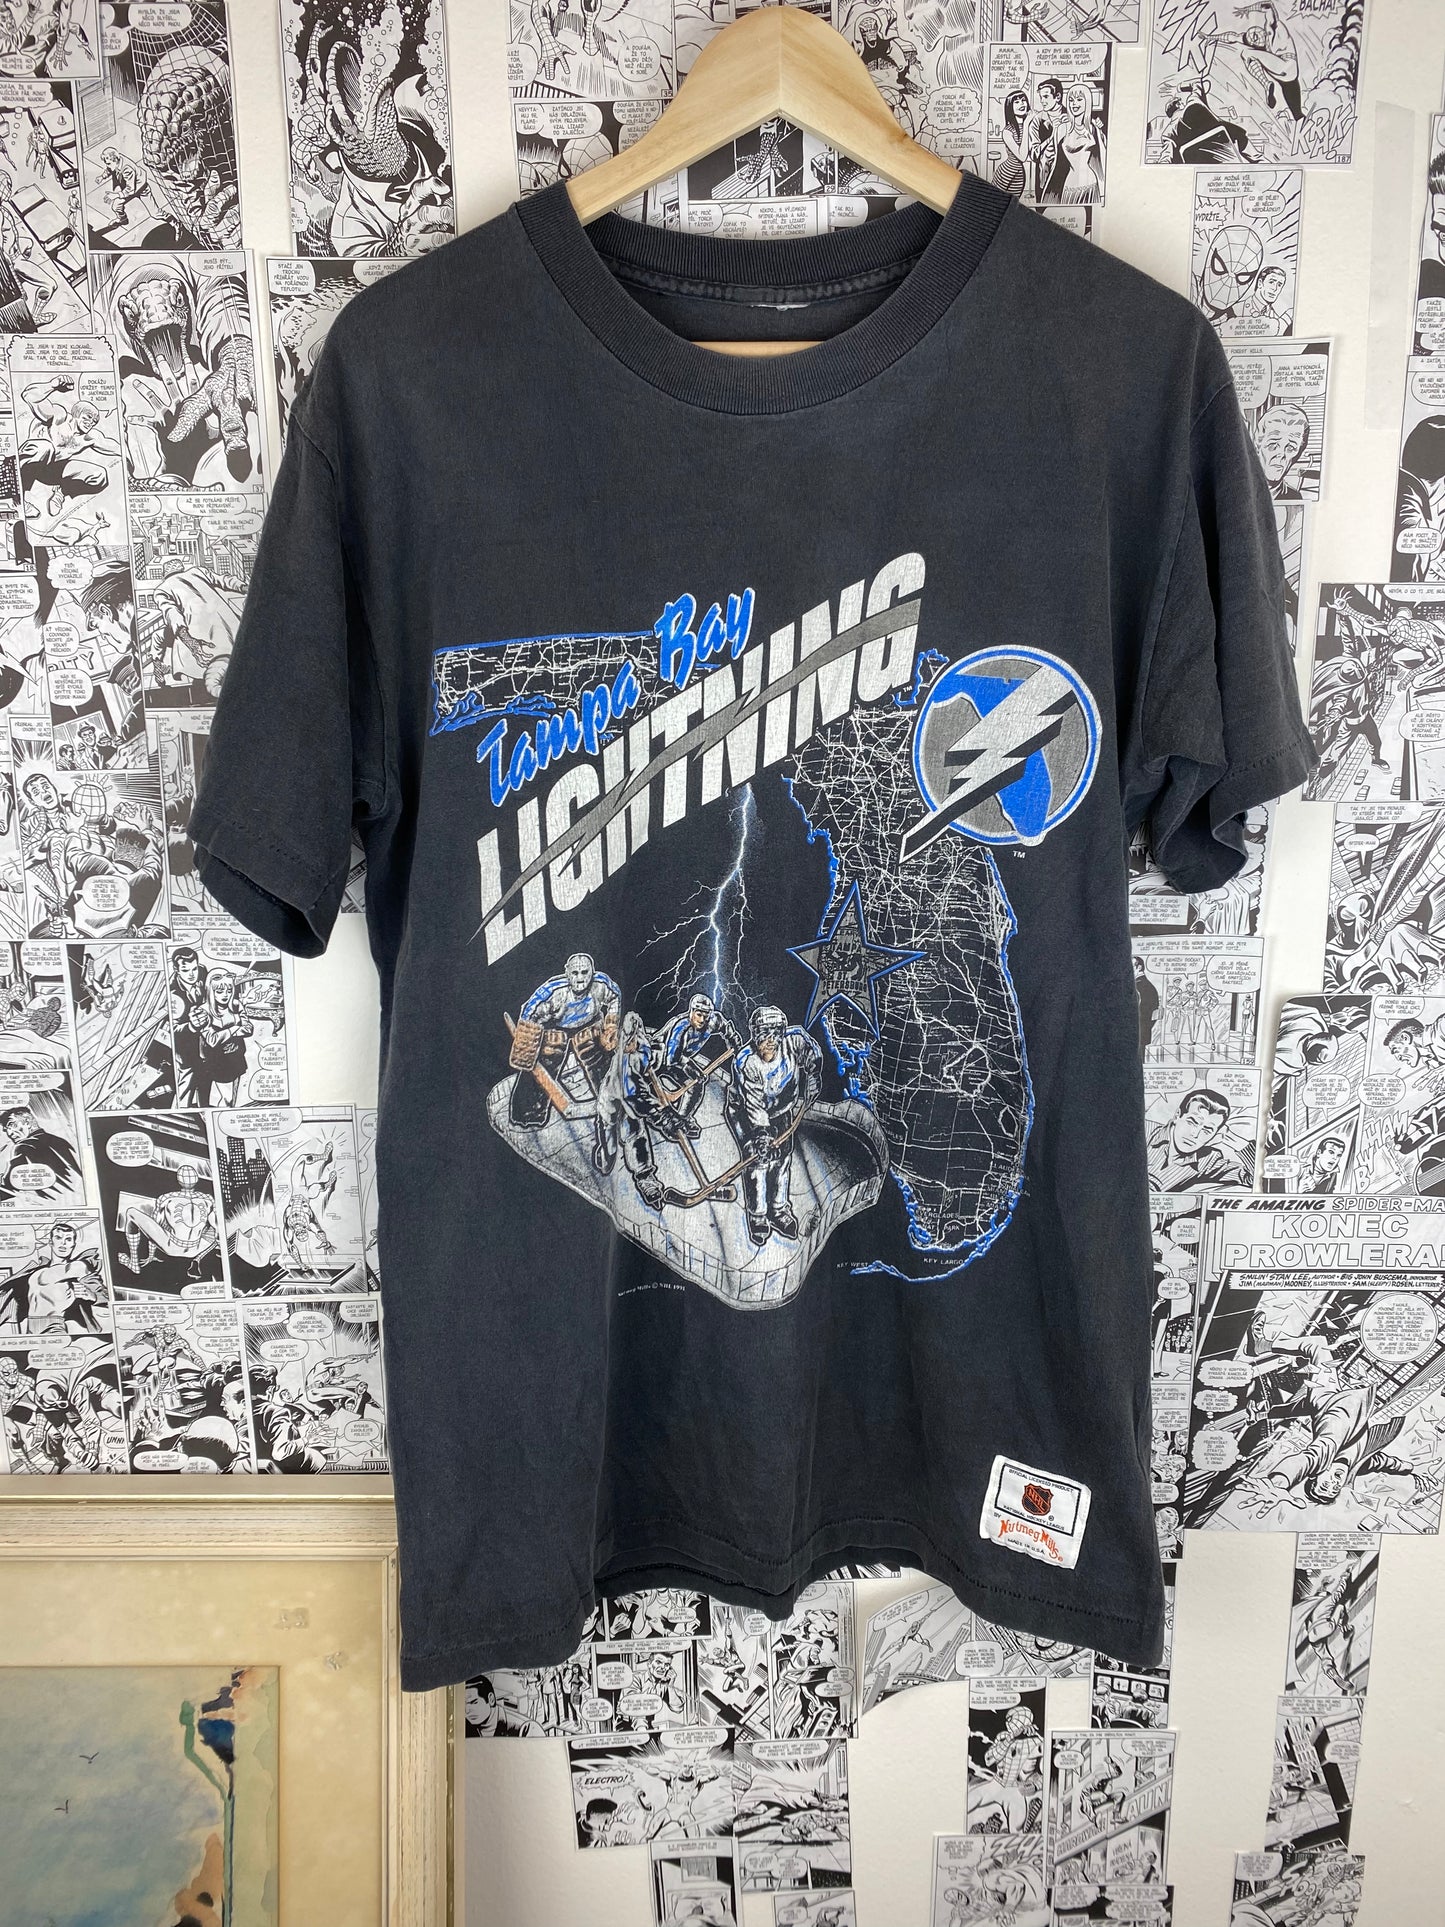 Vintage “Tampa Bay Lightning” 1991 t-shirt - size L